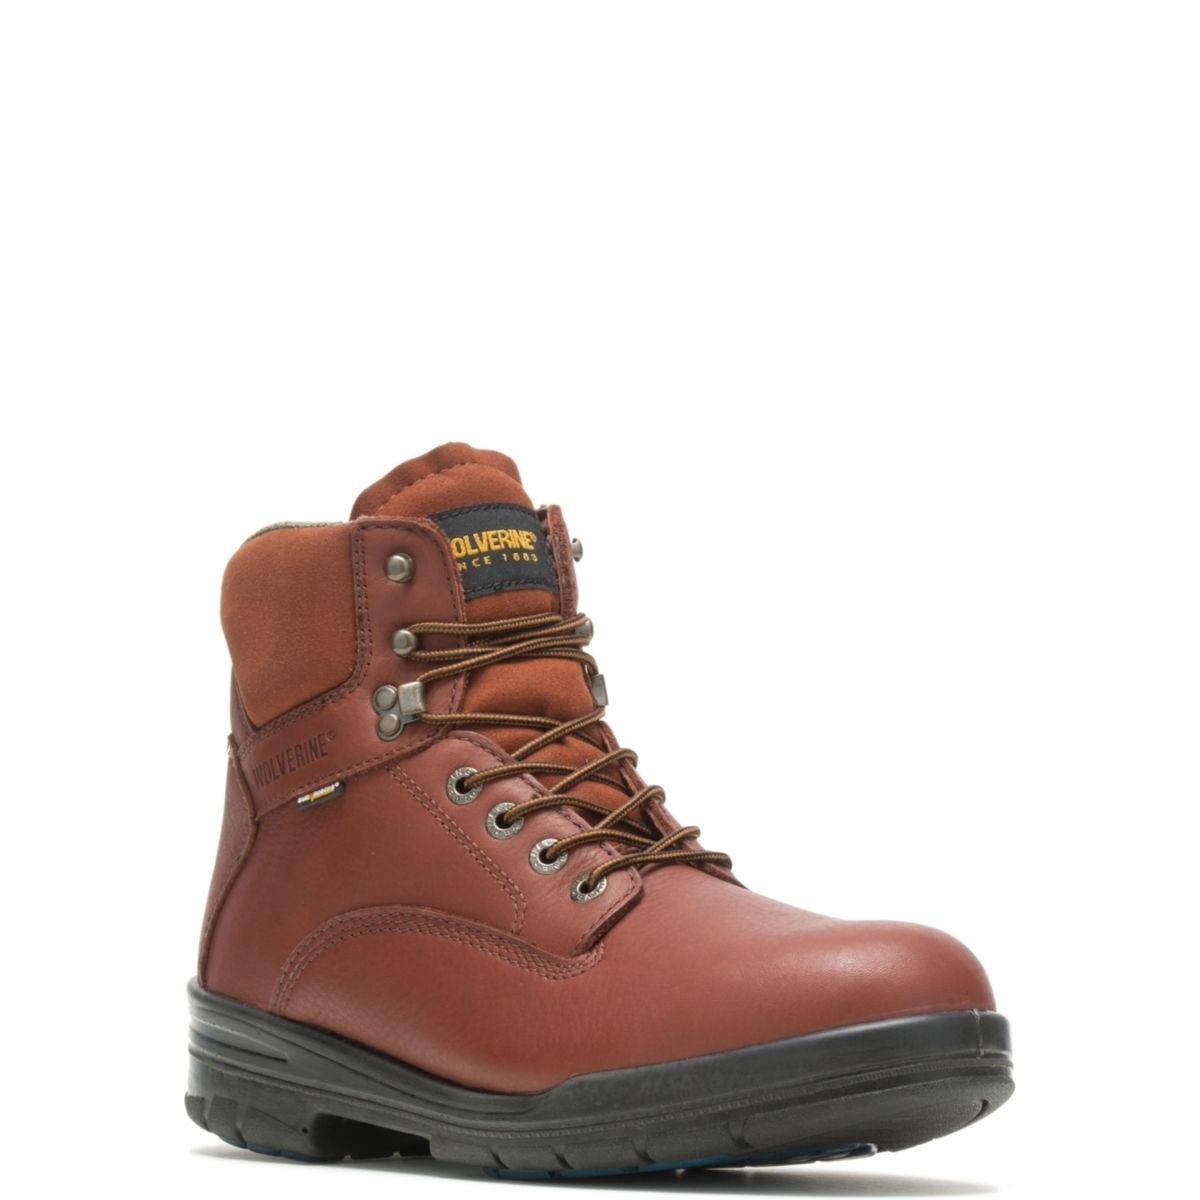 WOLVERINE Men's 6 DuraShocksÂ® Steel Toe Direct-Attach Work Boot Brown - W03120 BROWN - BROWN, 10.5